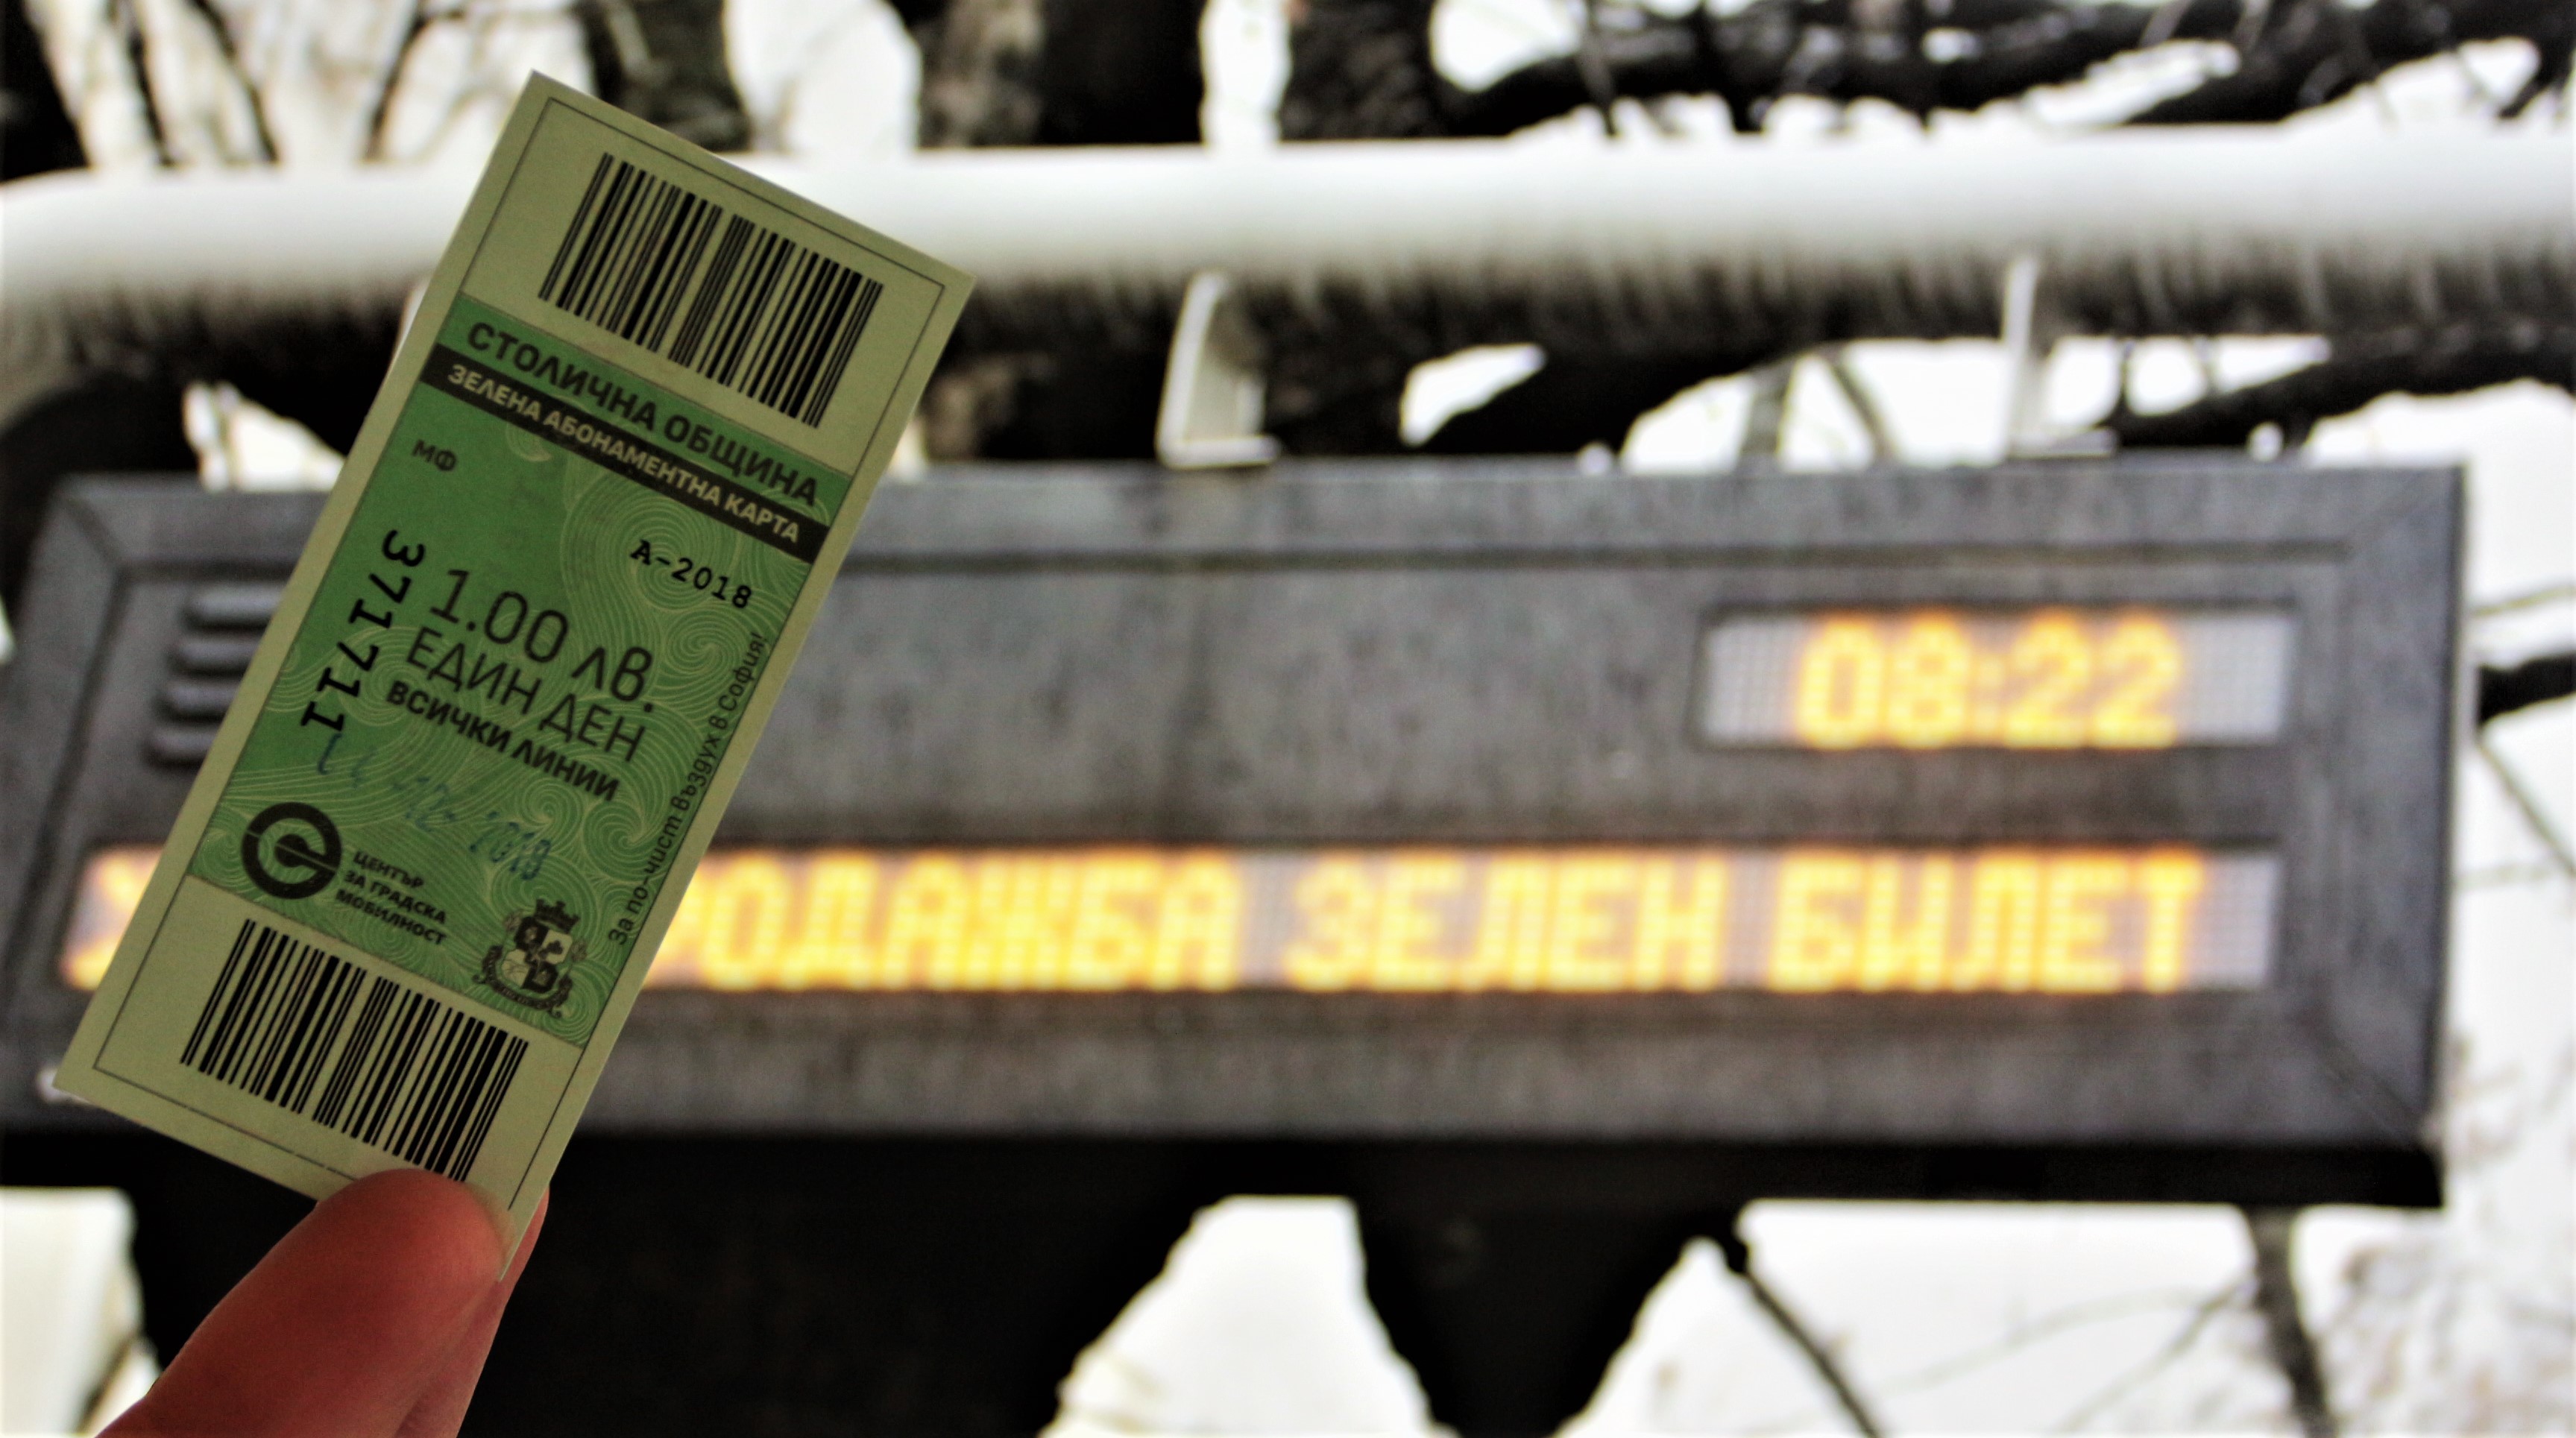 Зелен билет